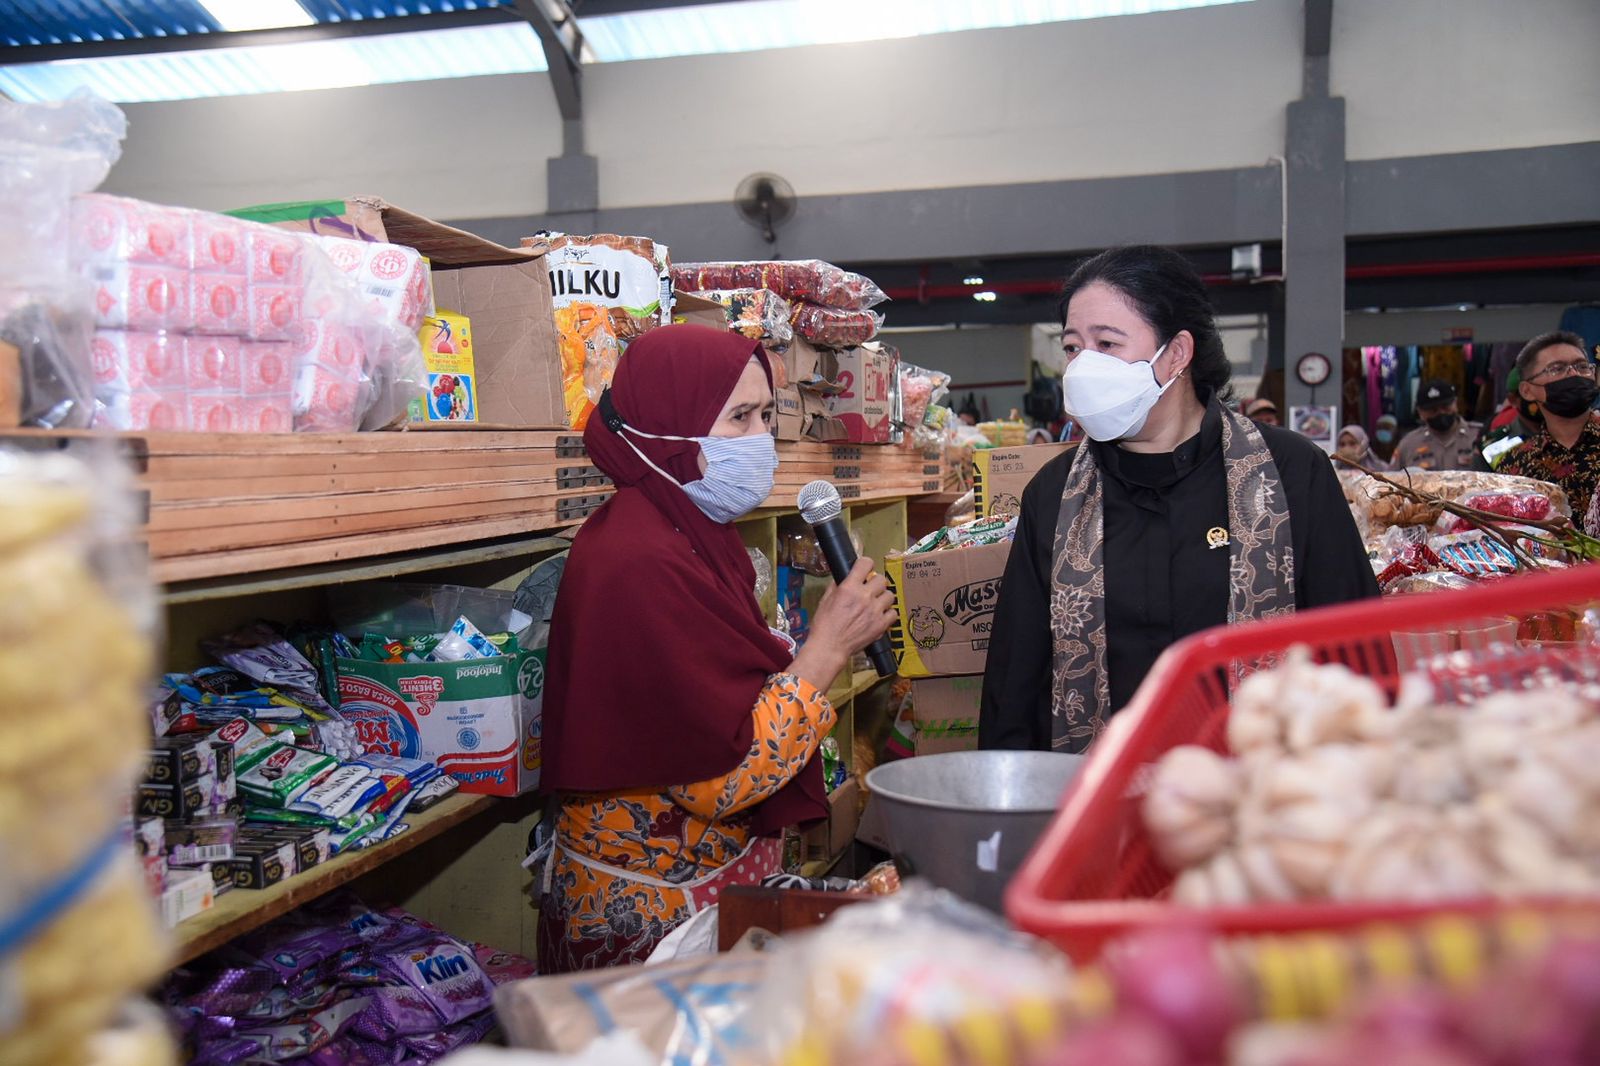 Resmikan Pasar Banyumas, Puan Cek Stok Pangan Sambil Belanja Sayur